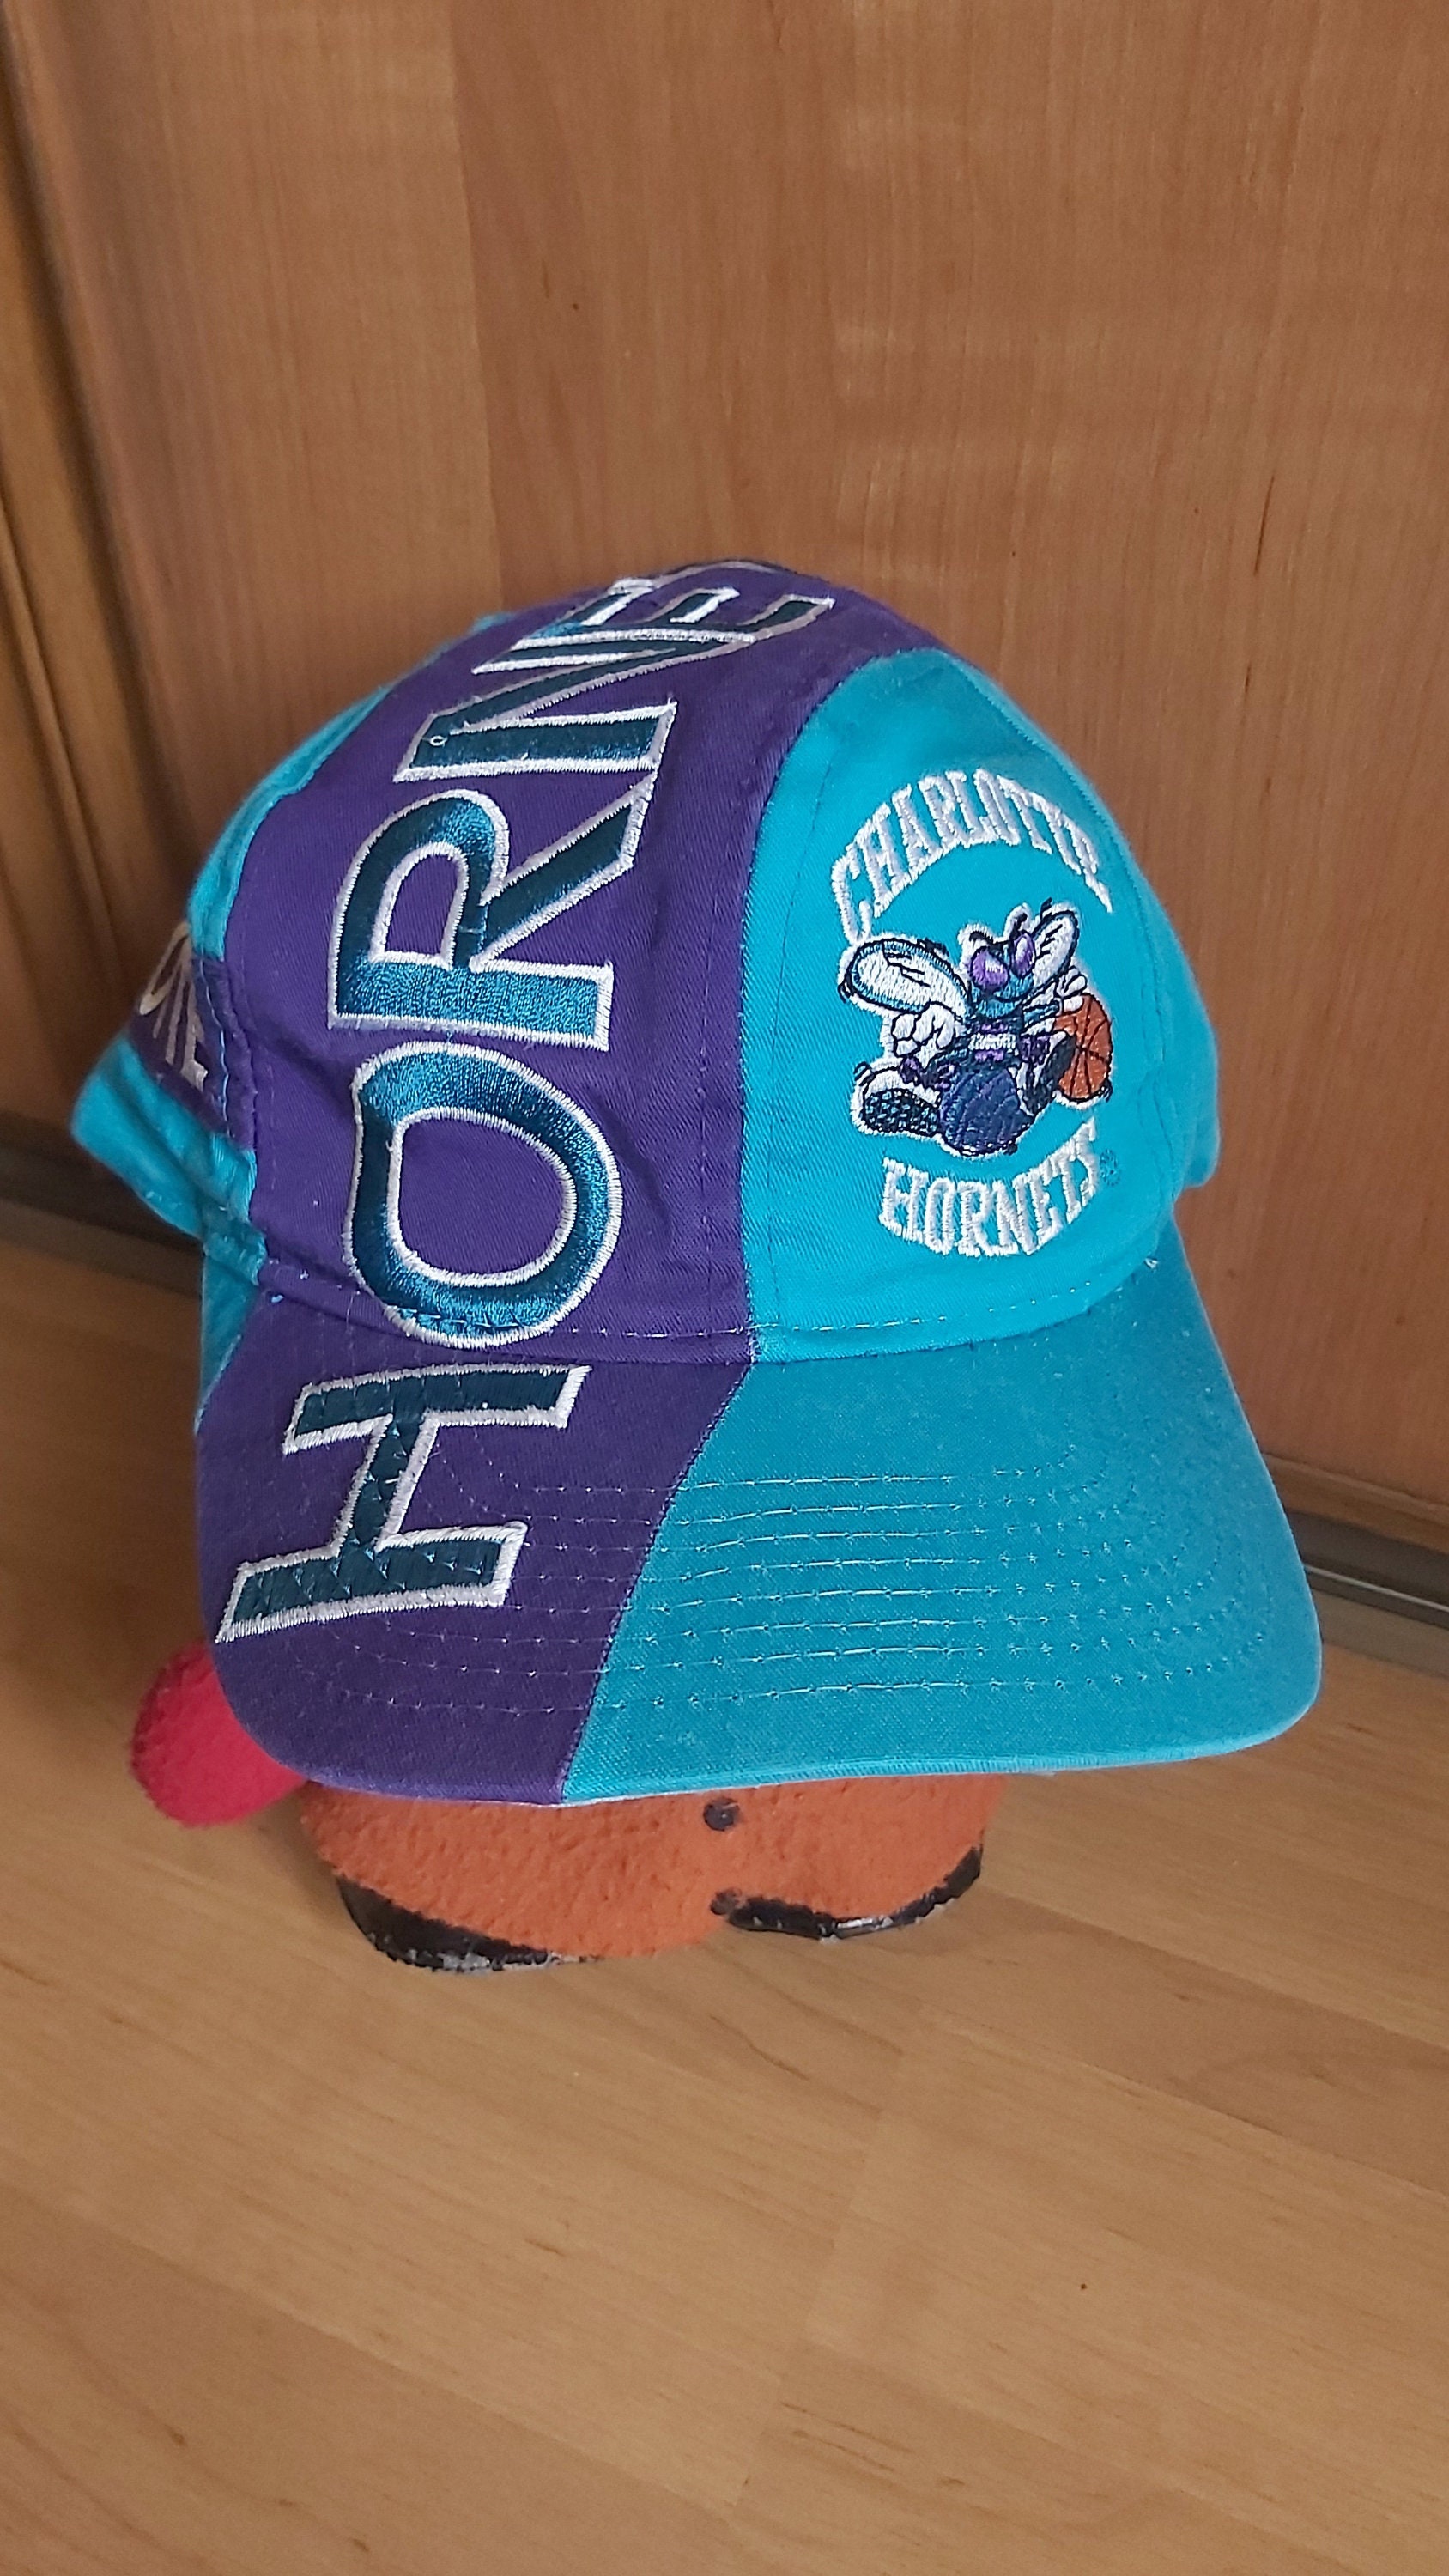 Mitchell & Ness Charlotte Hornets Snapback Hat -  White/Teal/Purple/Paintstroke - Basketball Cap for Men